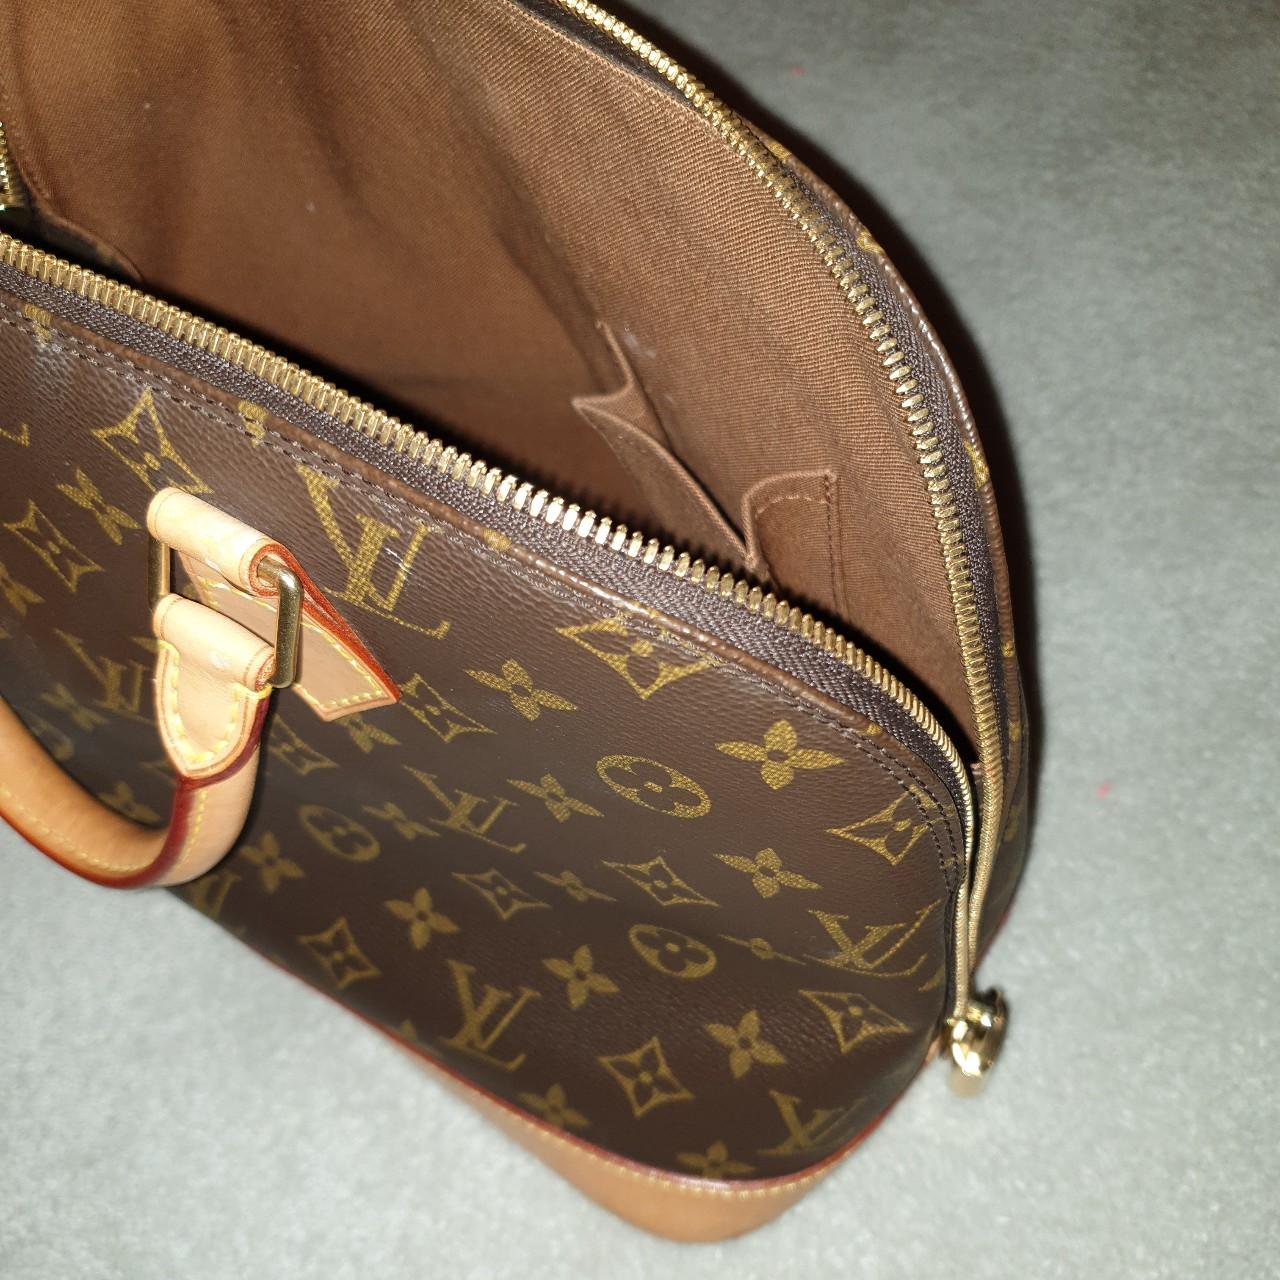 VINTAGE Louis Vuitton Noé bag. It was a present from - Depop